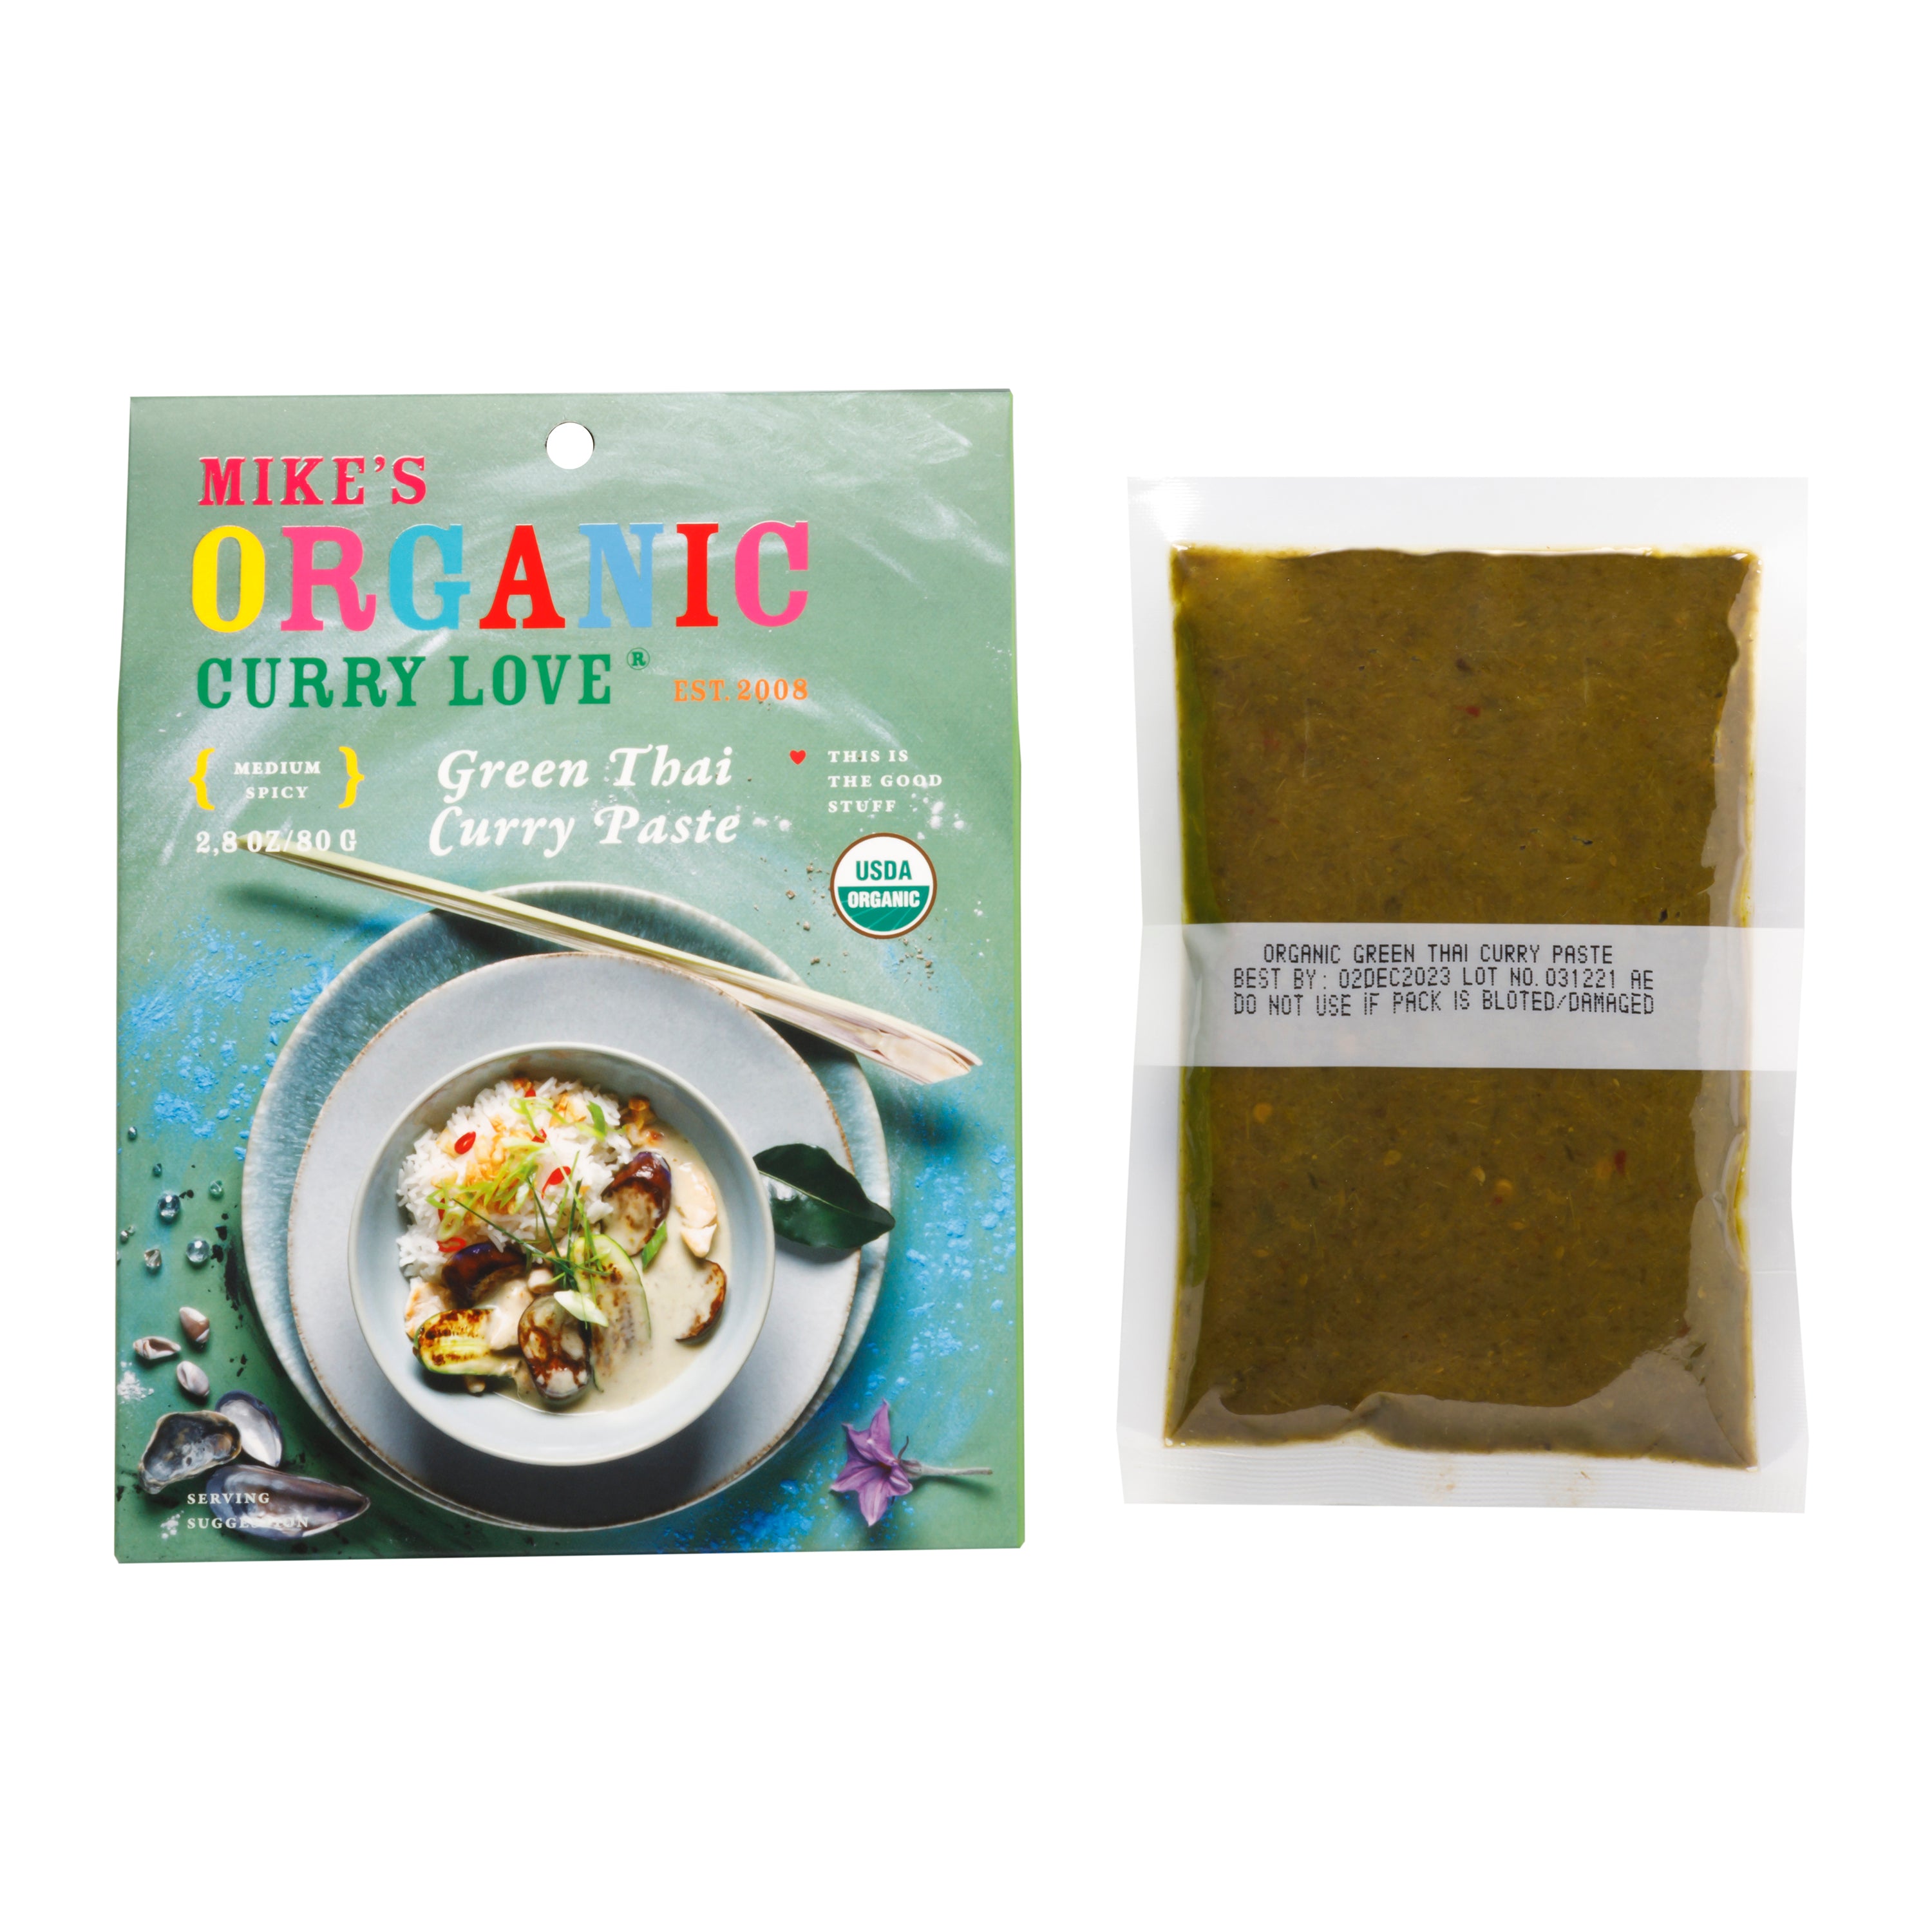 Green Thai Curry Paste - 6 x 2.8 oz pouches